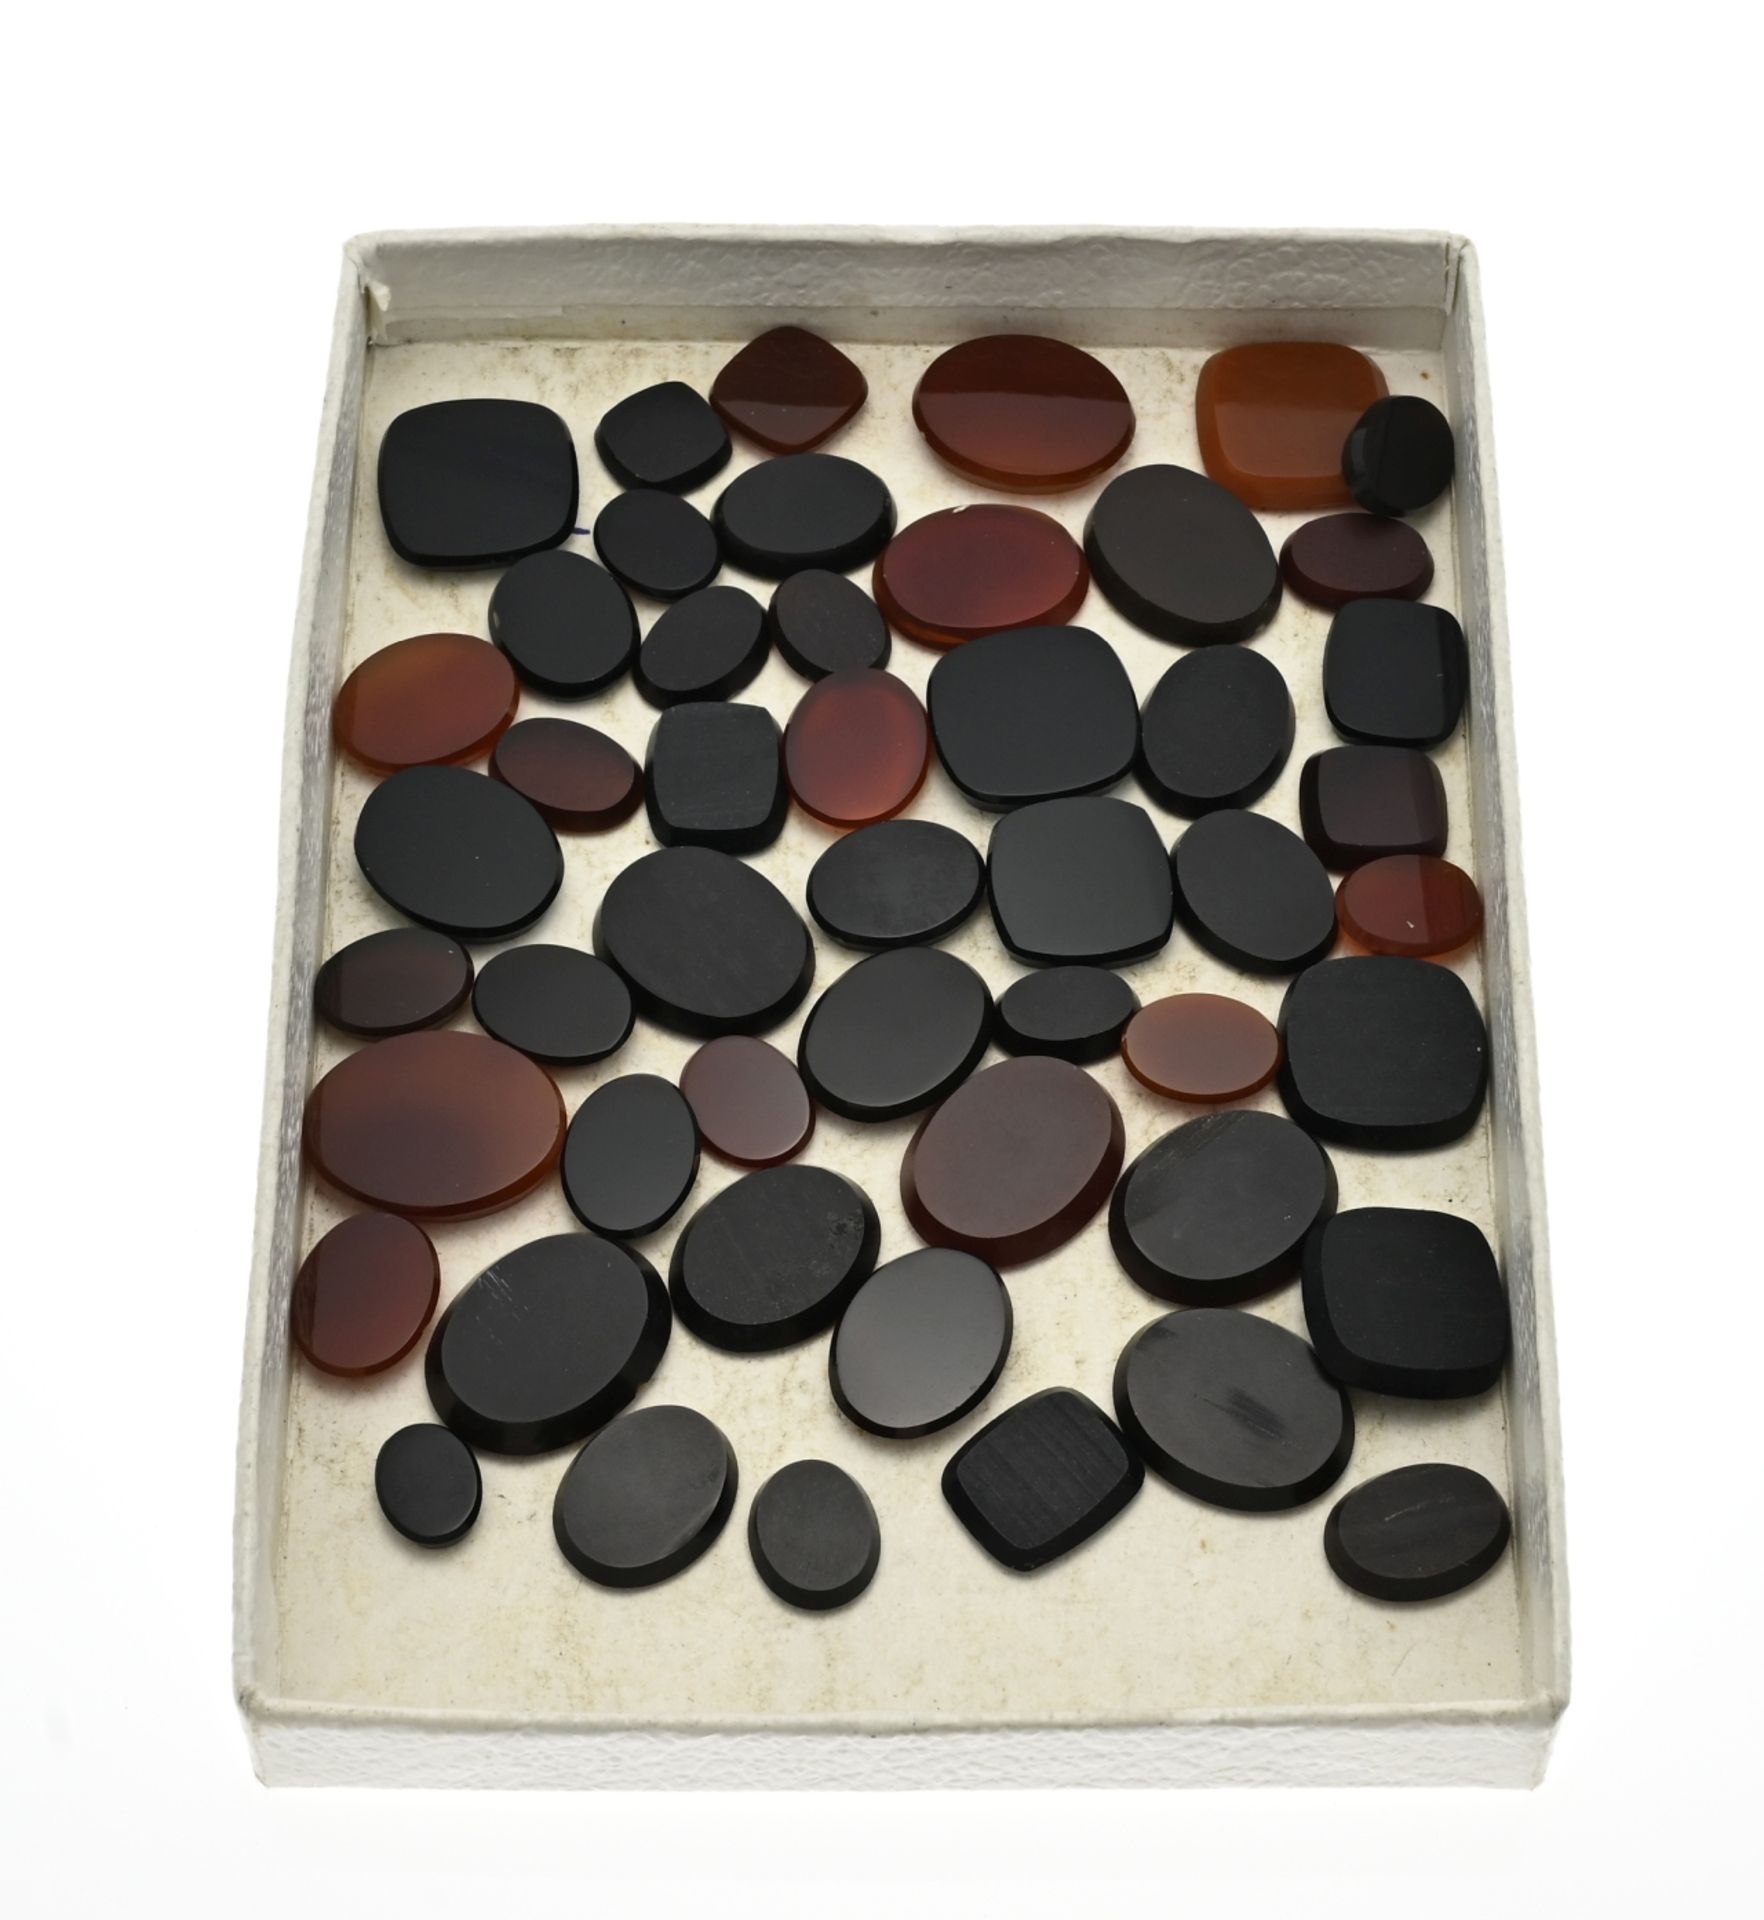 Lot with 50 carnelian/onyx stones